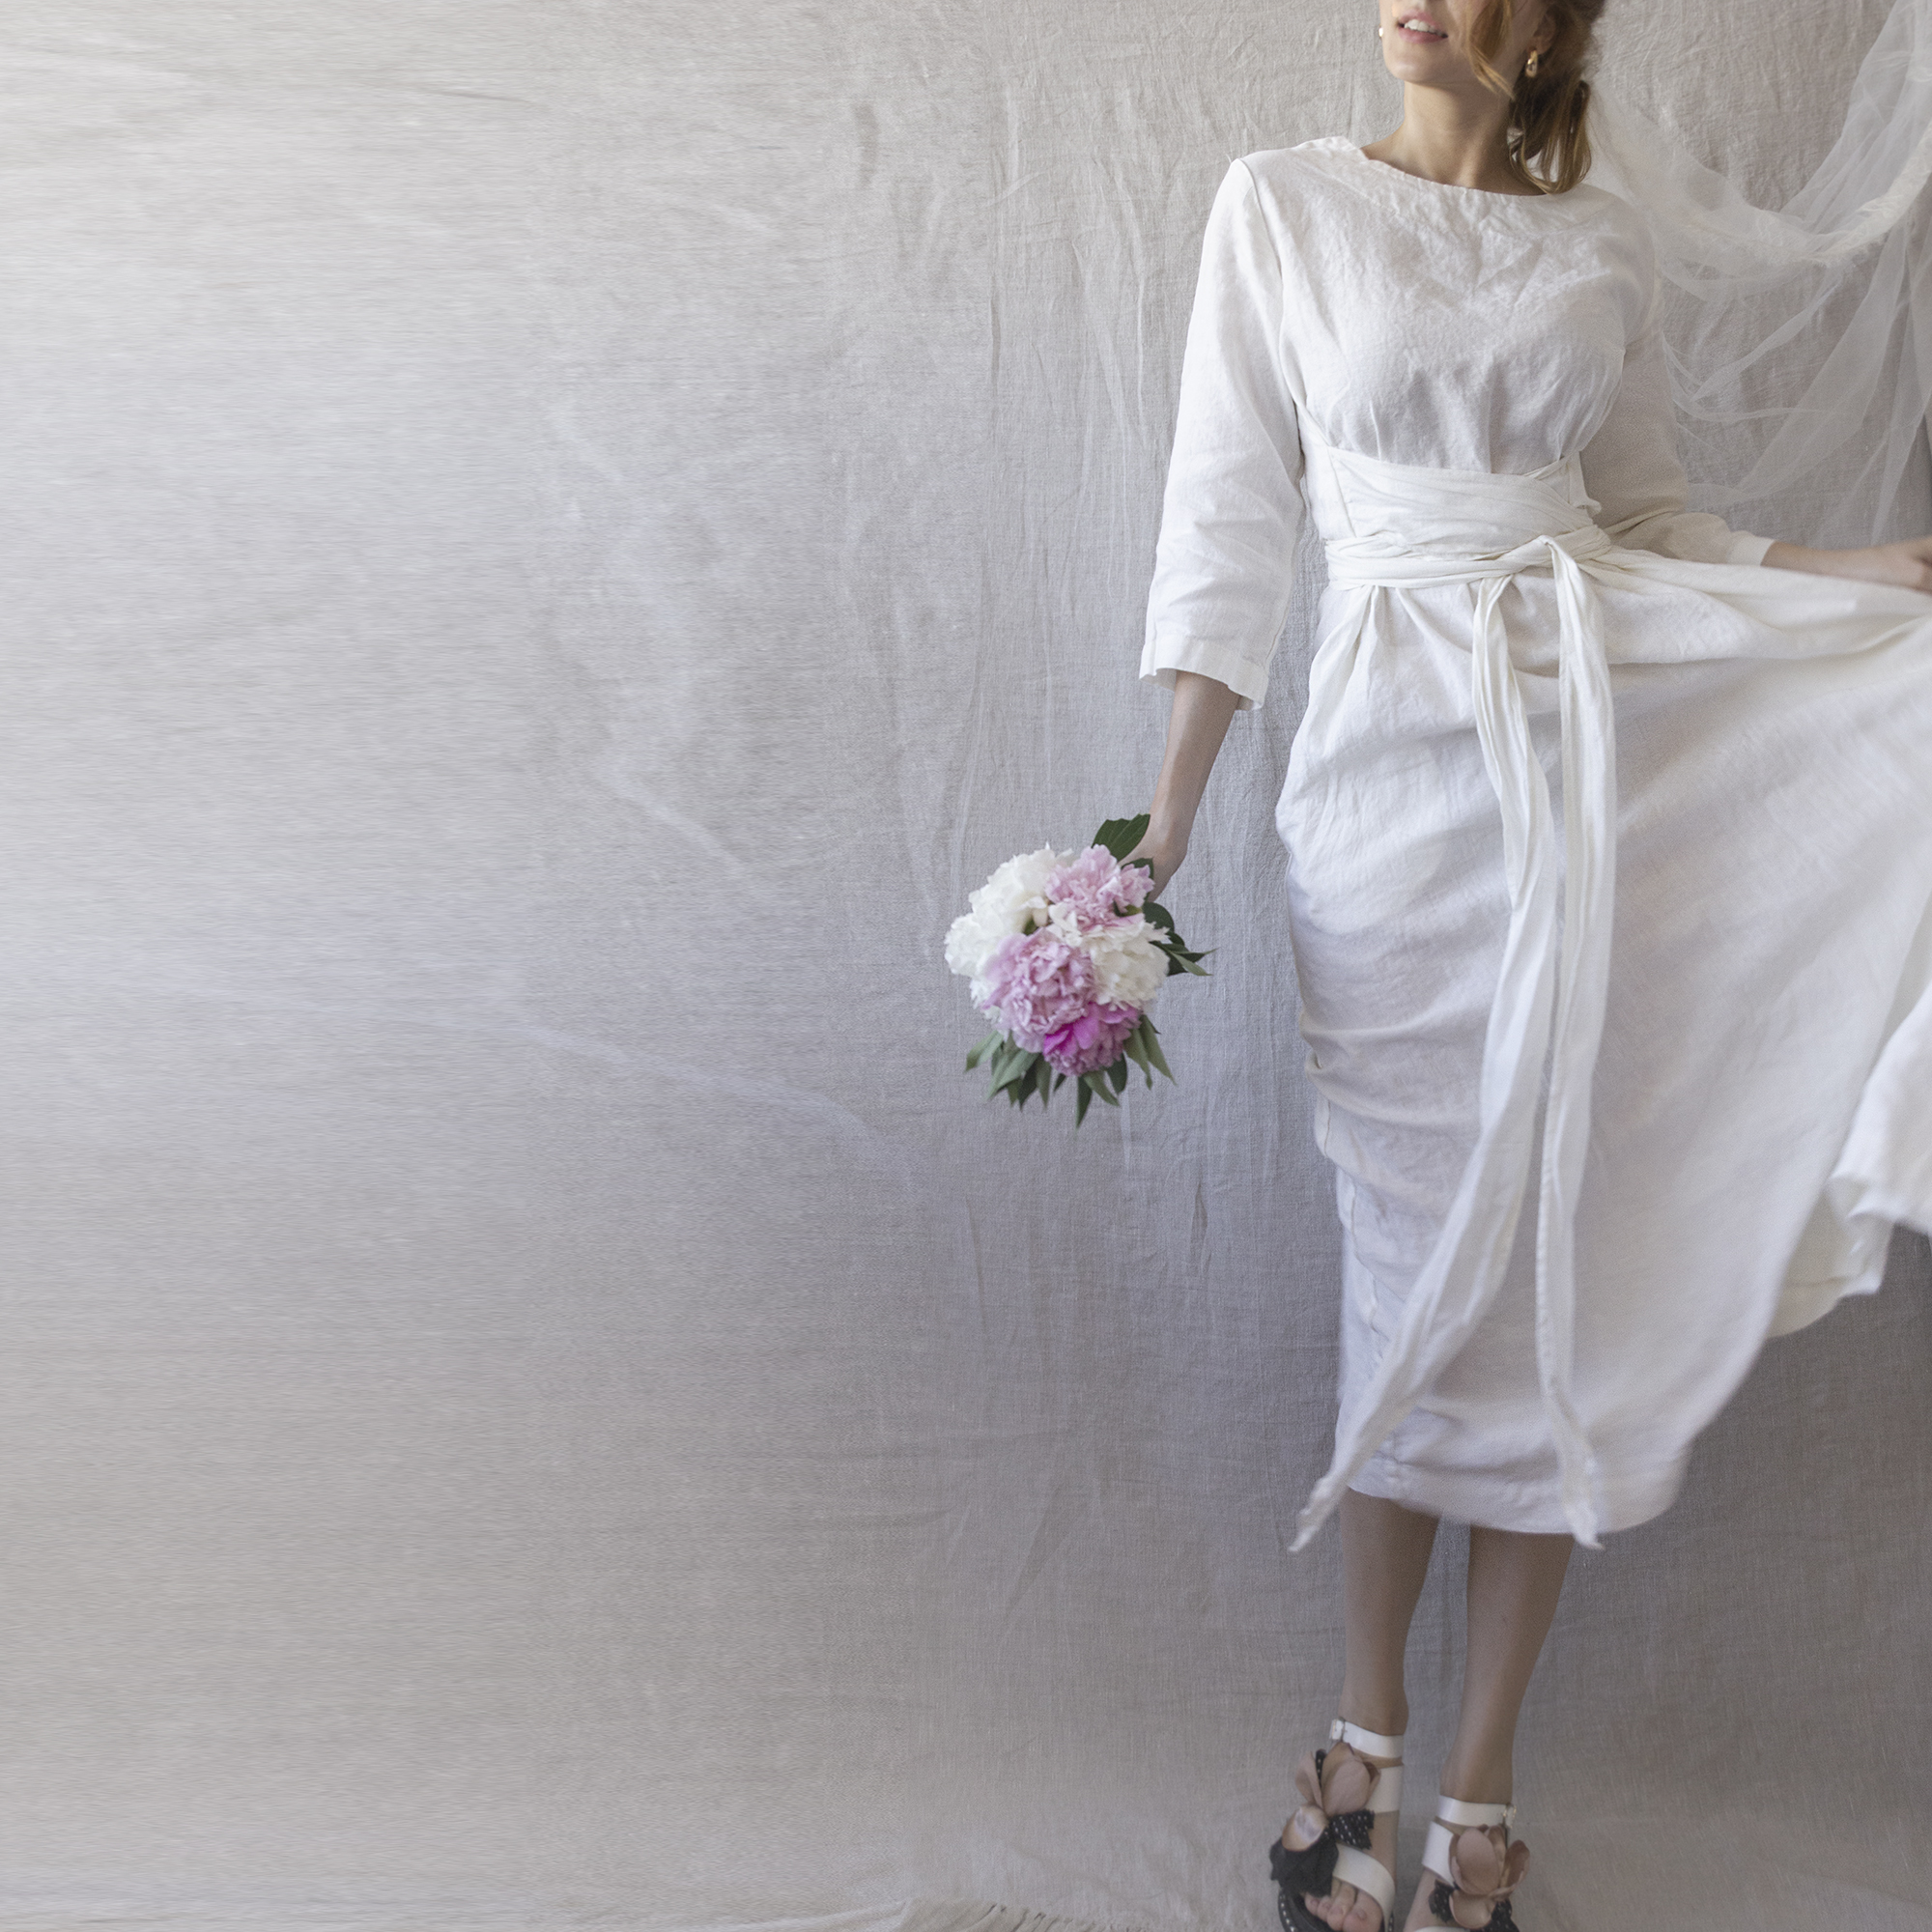 Linen-wedding-dress